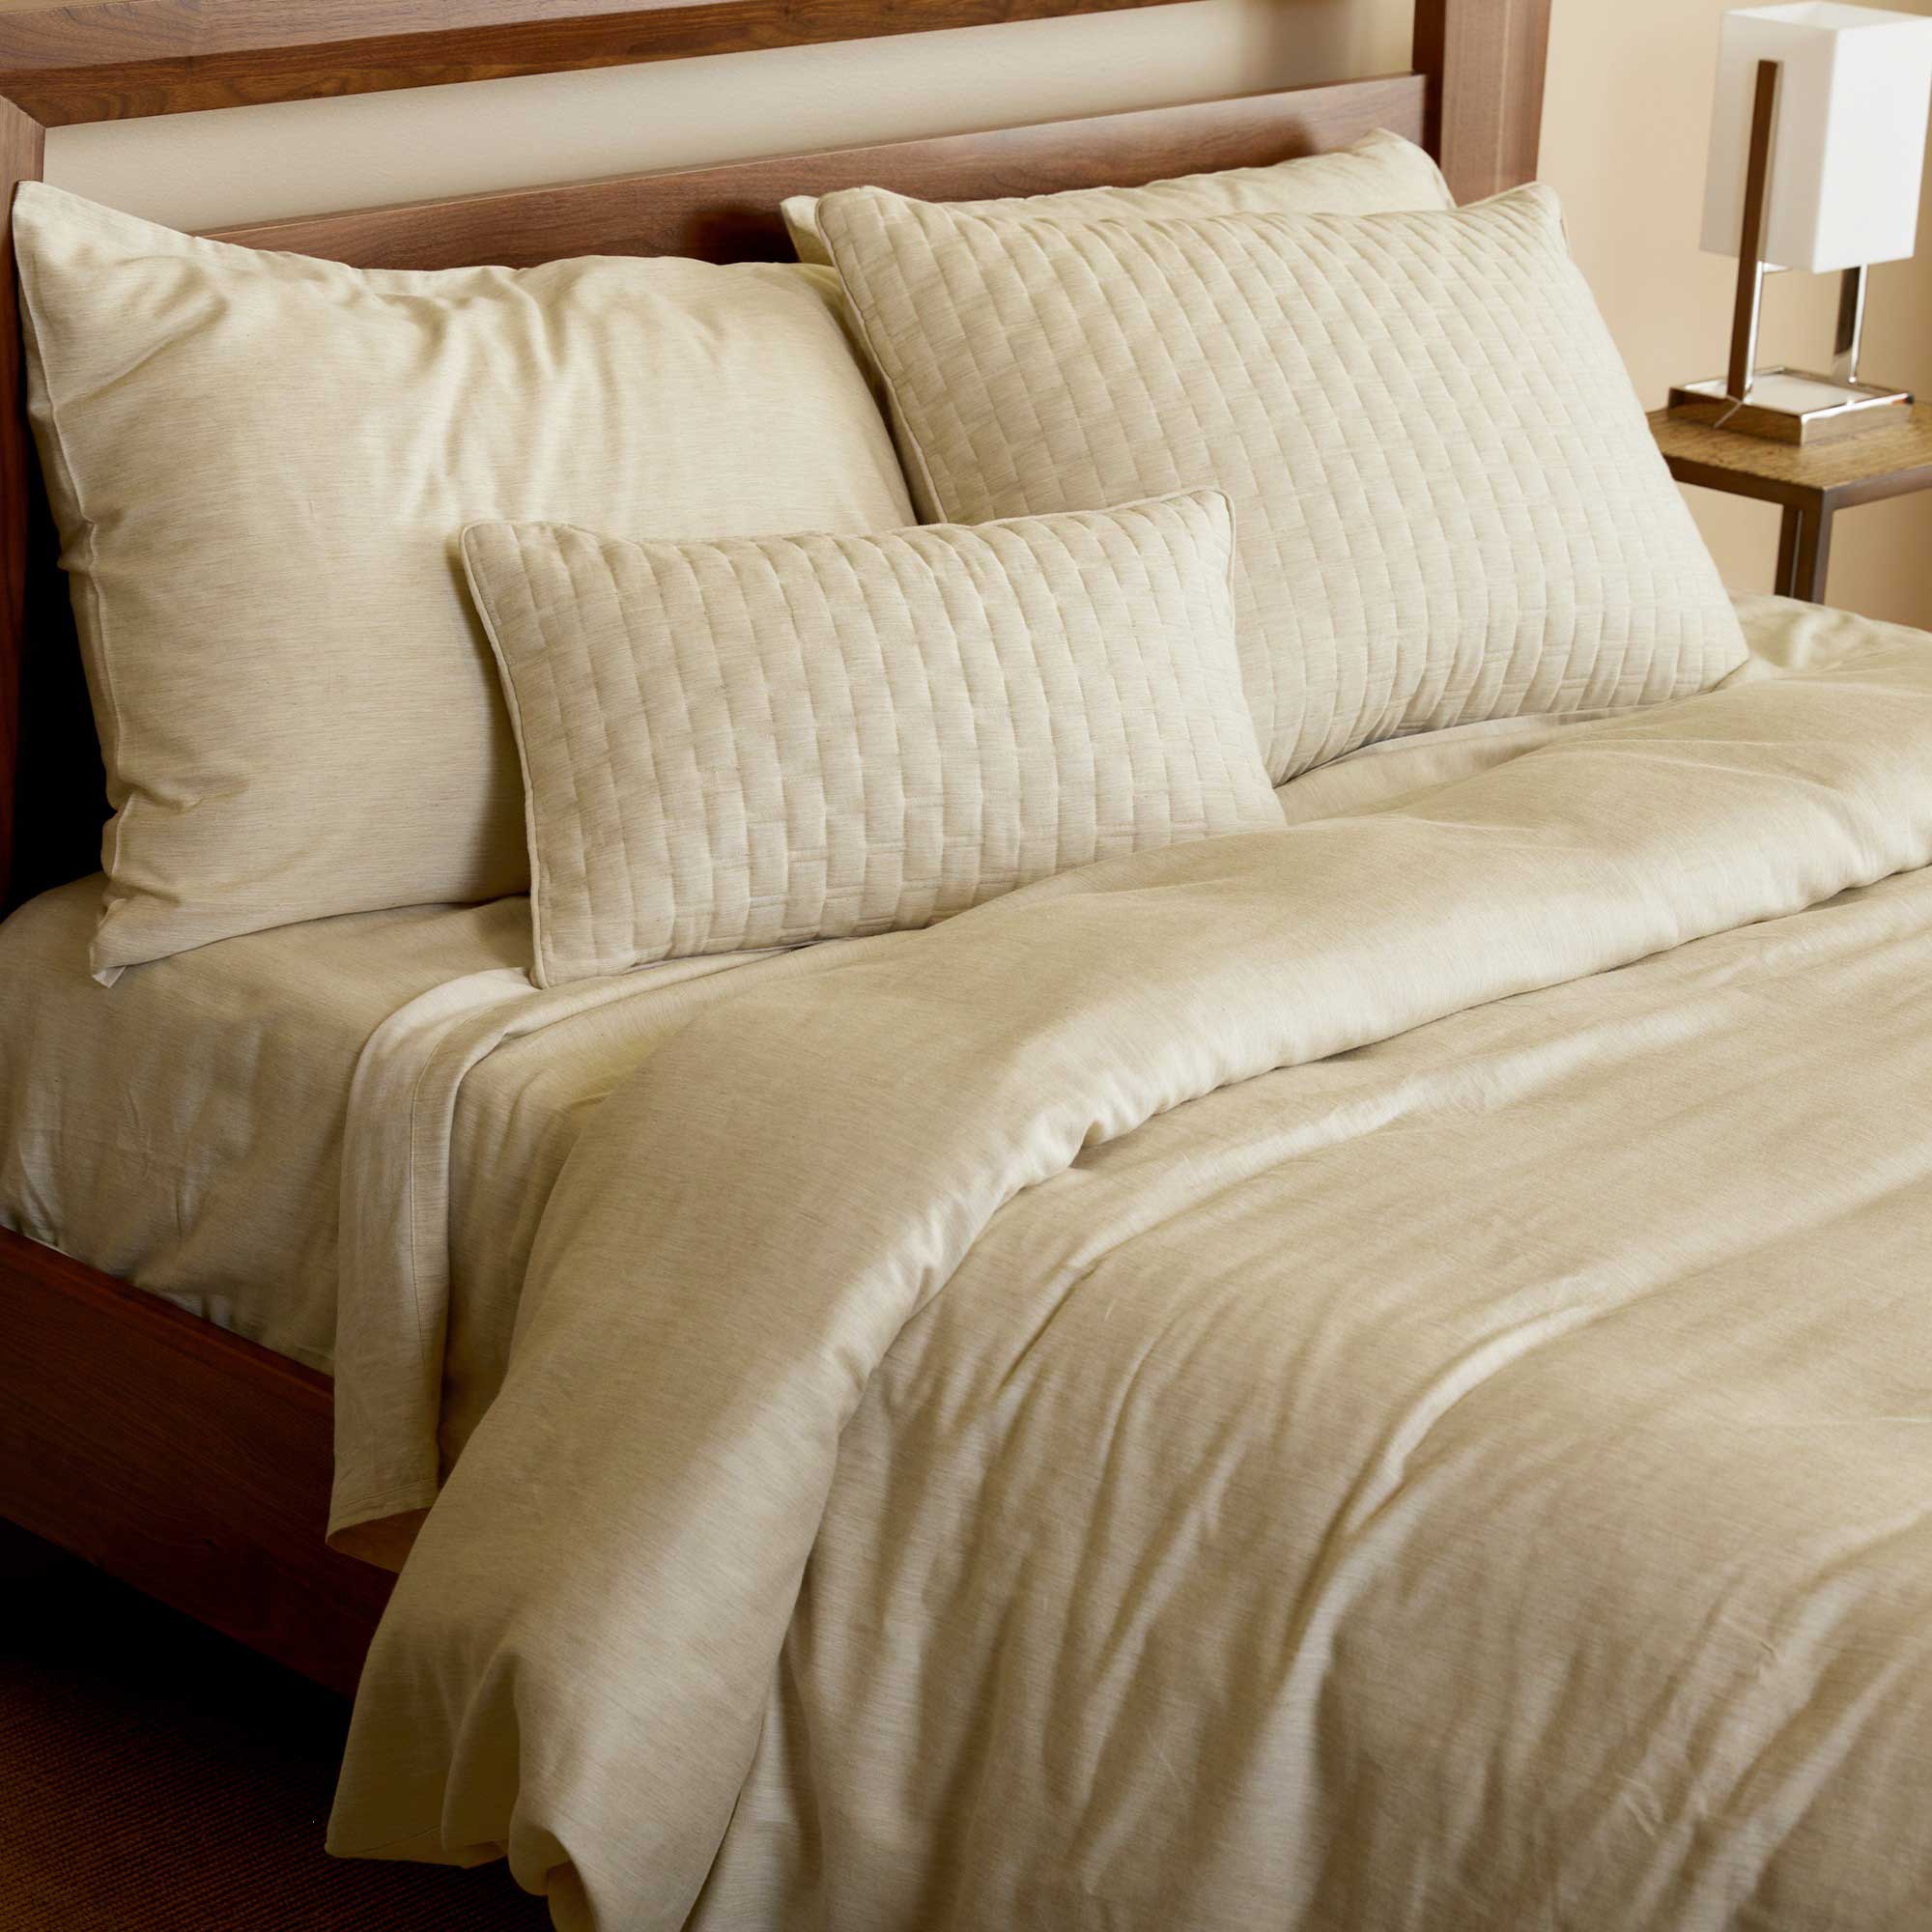 sand beige bamboo melange duvet cover and standard shams on a bed